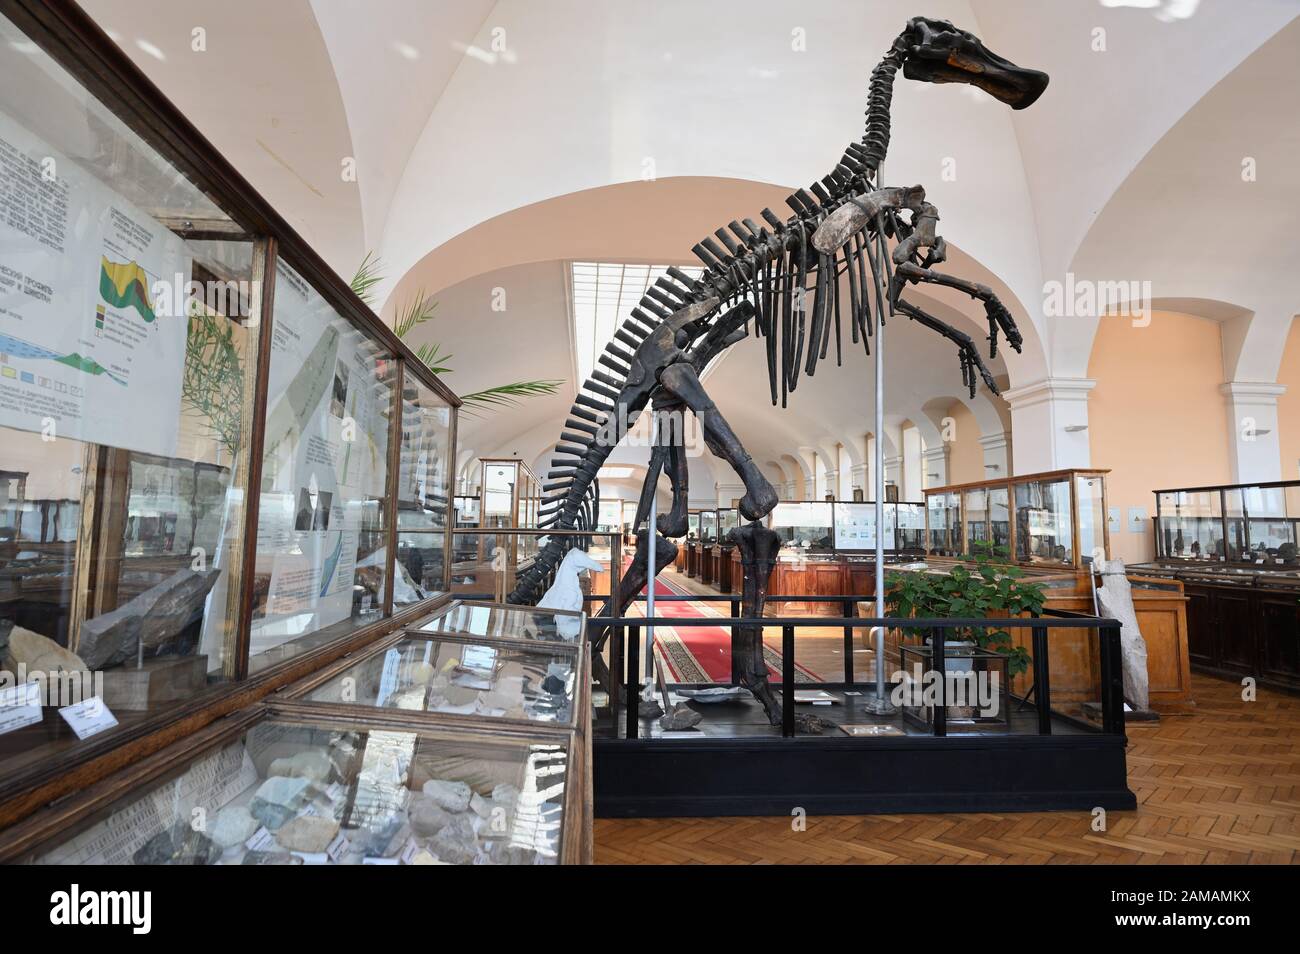 St. Petersburg, Russland - 18. Juni 2018: Dinosaurierskelett und Mineralien, die im geologischen Museum der Zentralforschung ausgesetzt sind. Das 1882 gegründete Museum ist seit 1930 öffentlich zugänglich Stockfoto